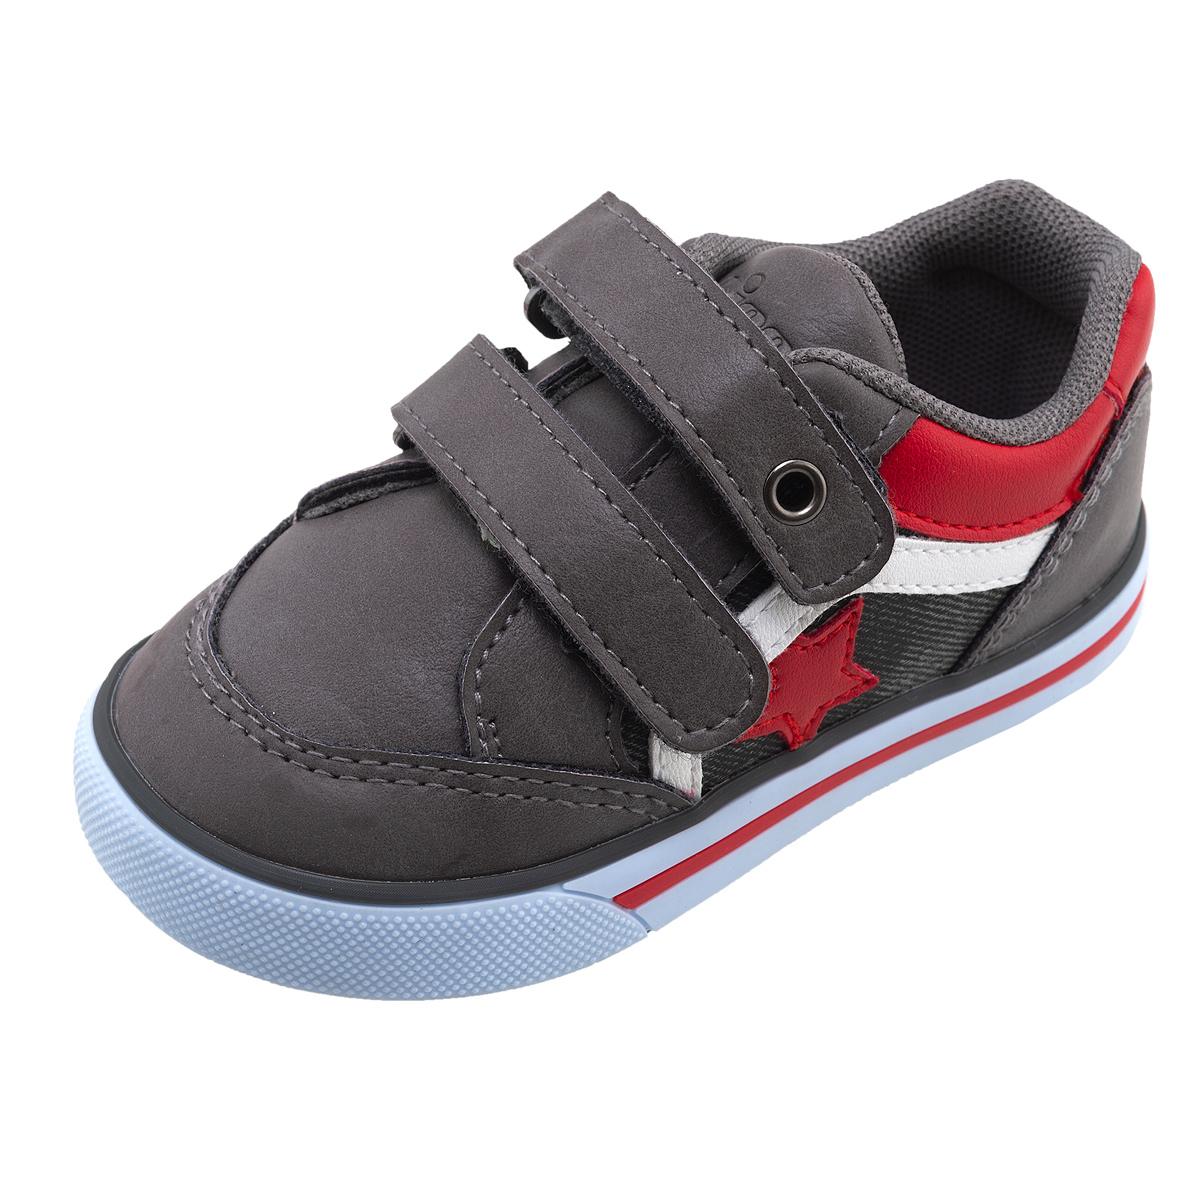 Pantof sport copii Chicco Fabio, gri inchis, 64361